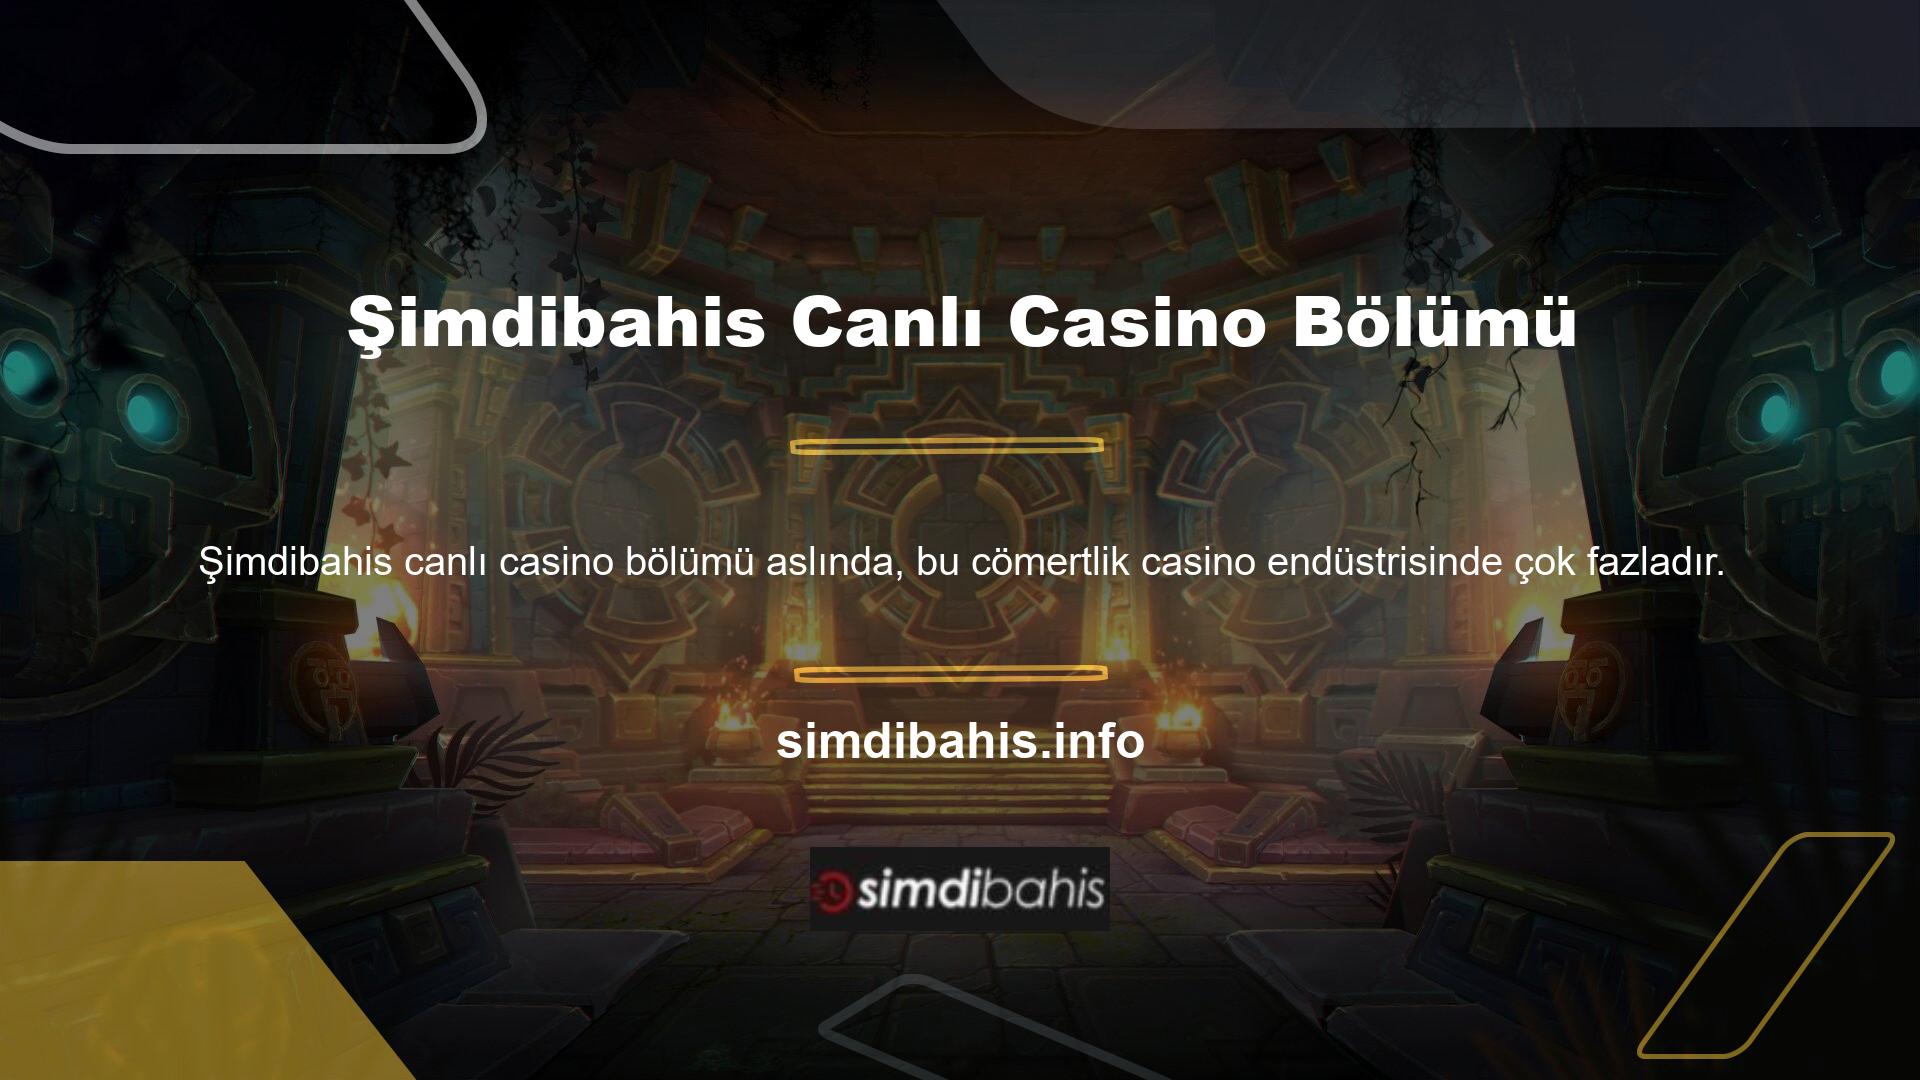 Mesele şu ki, birçok casino şirketi bonusu aslında casino meraklıları için özel olarak tasarlanmıştır